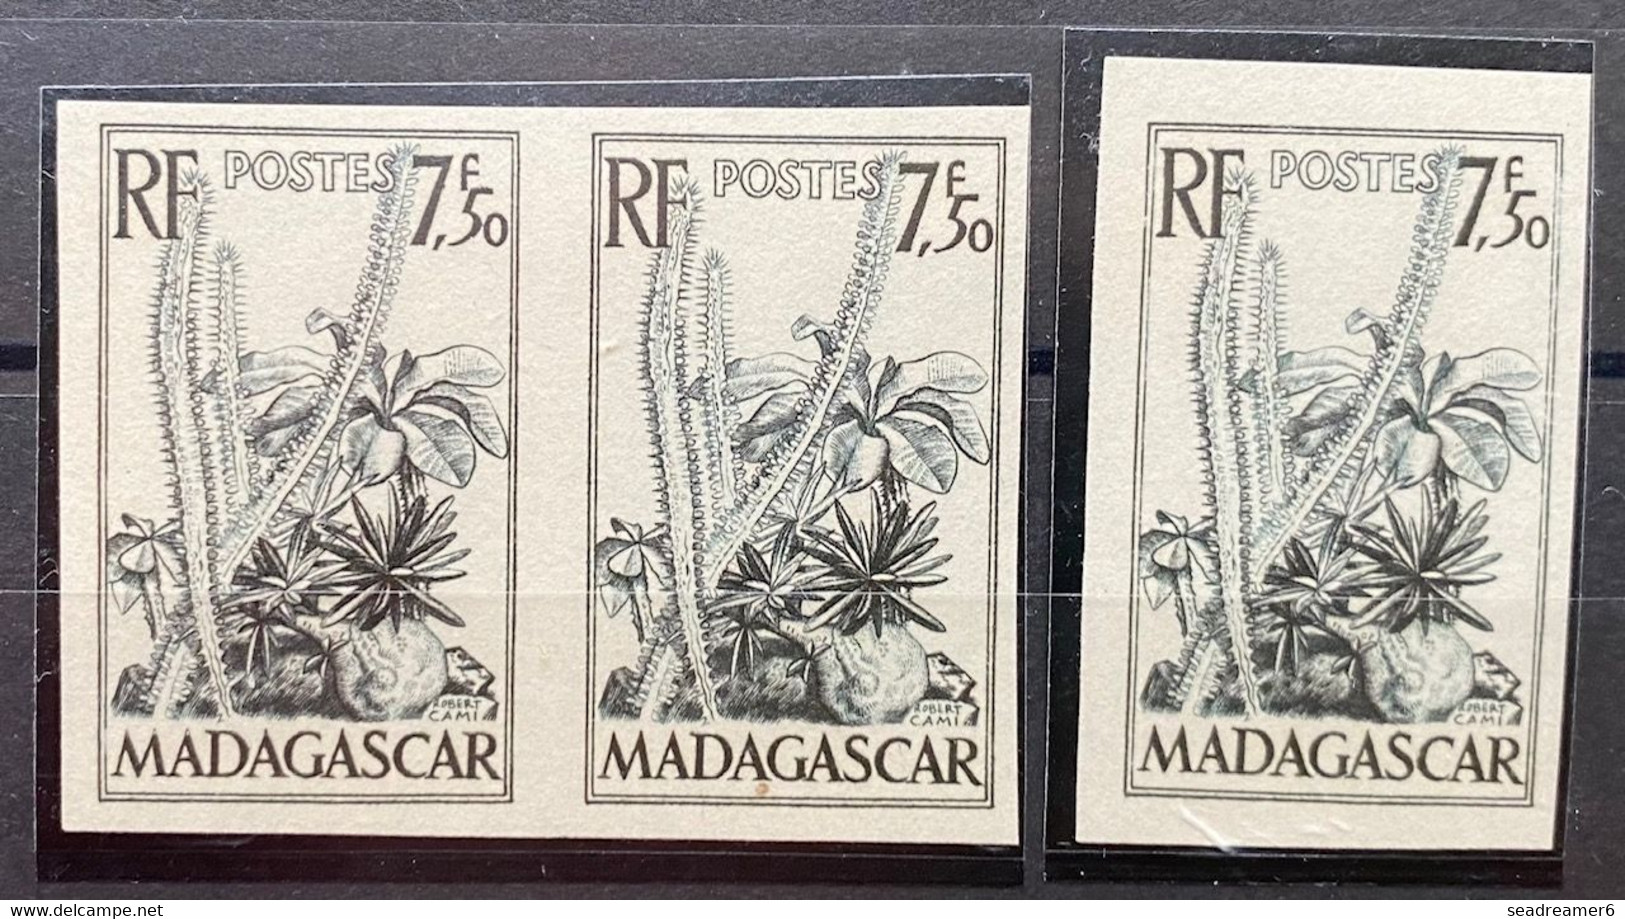 France Colonies Françaises Madagascar N°322** 3 Essais De Couleurs Du Type Composition Florale Fleurs Plantes TTB - Neufs